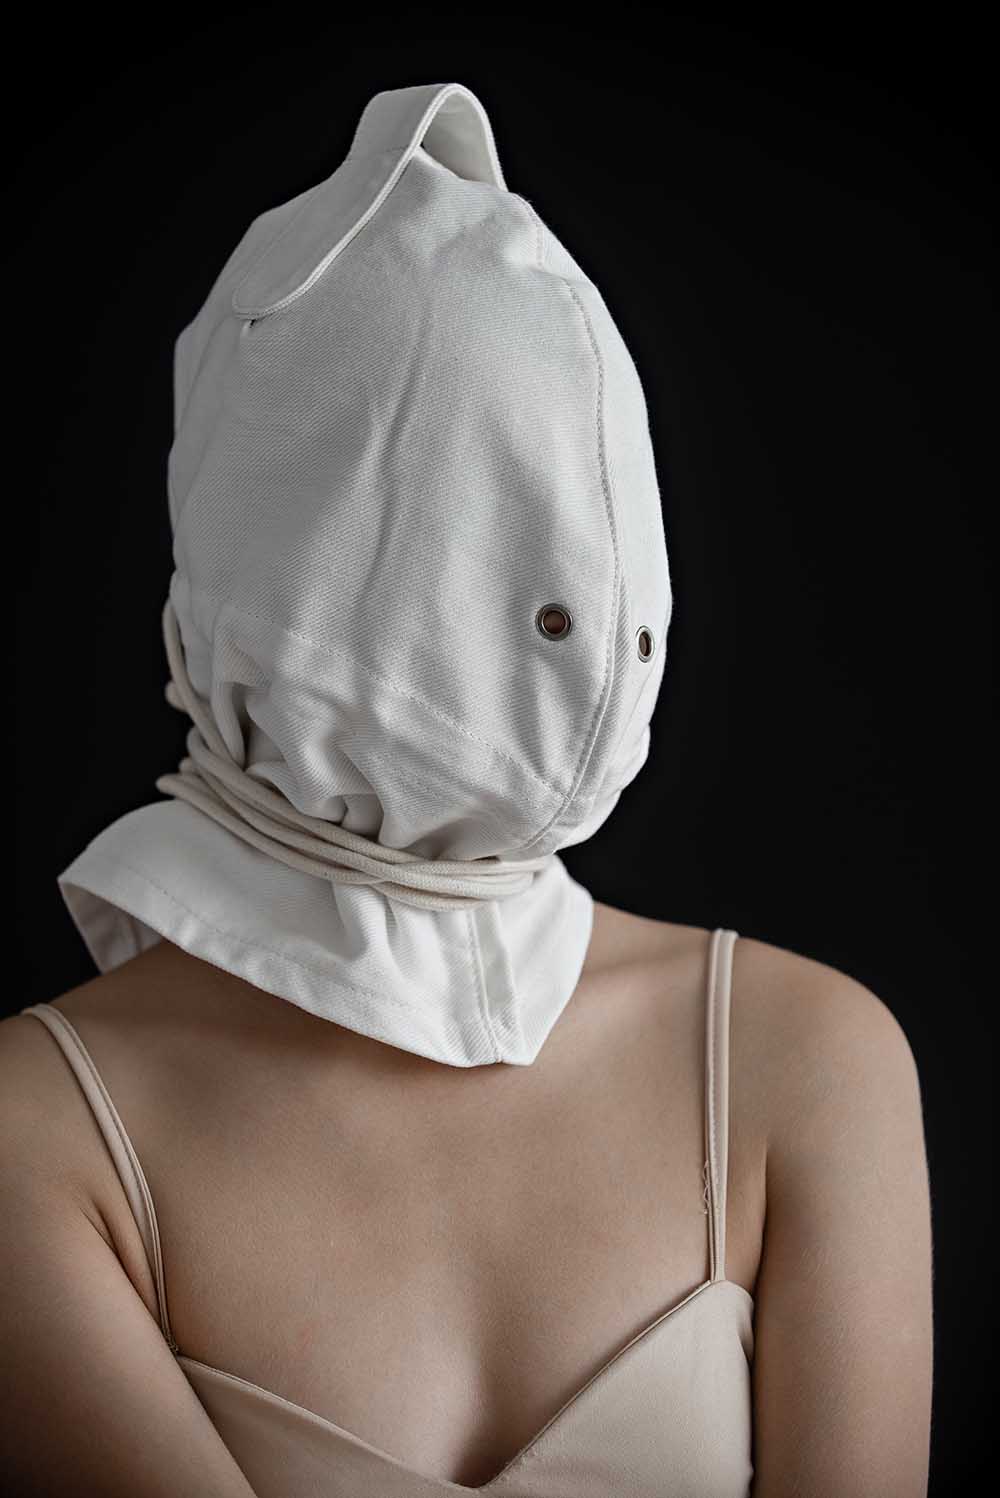 Bondage Hood, blindfold hood with holes for breathing. White